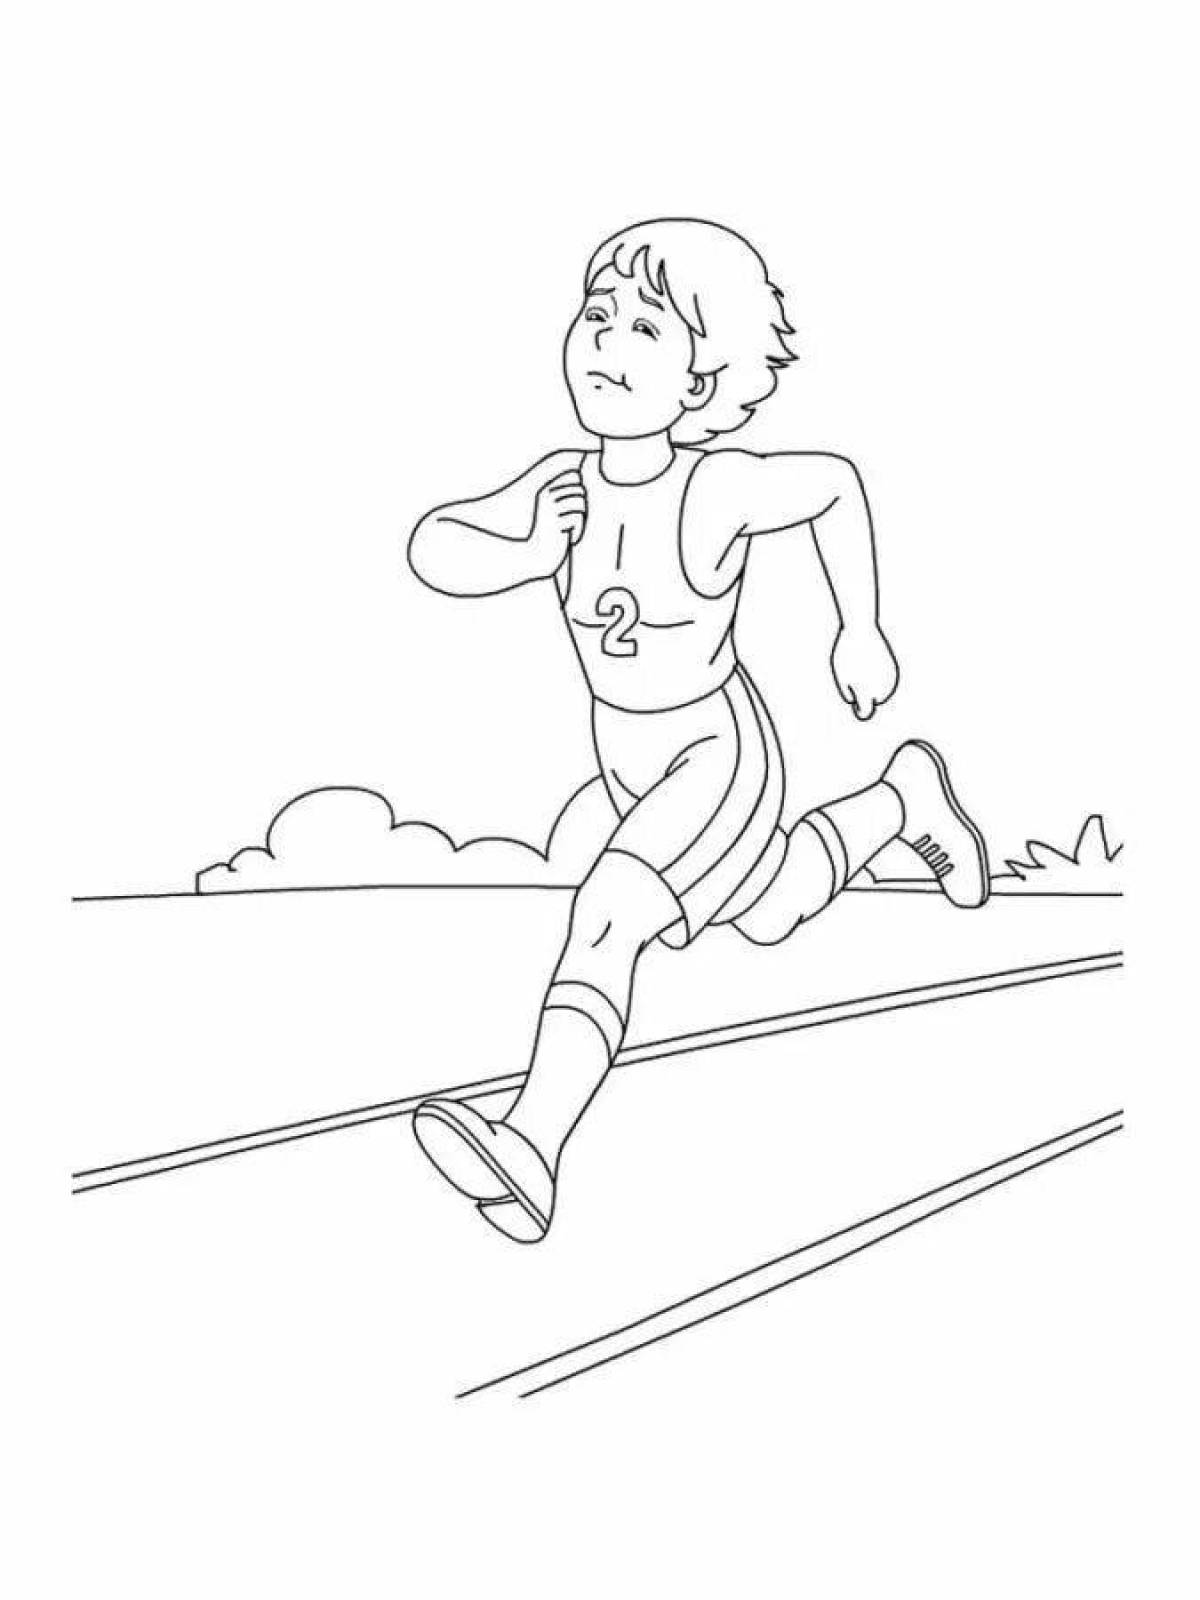 Рисунки детей на тему легкая атлетика